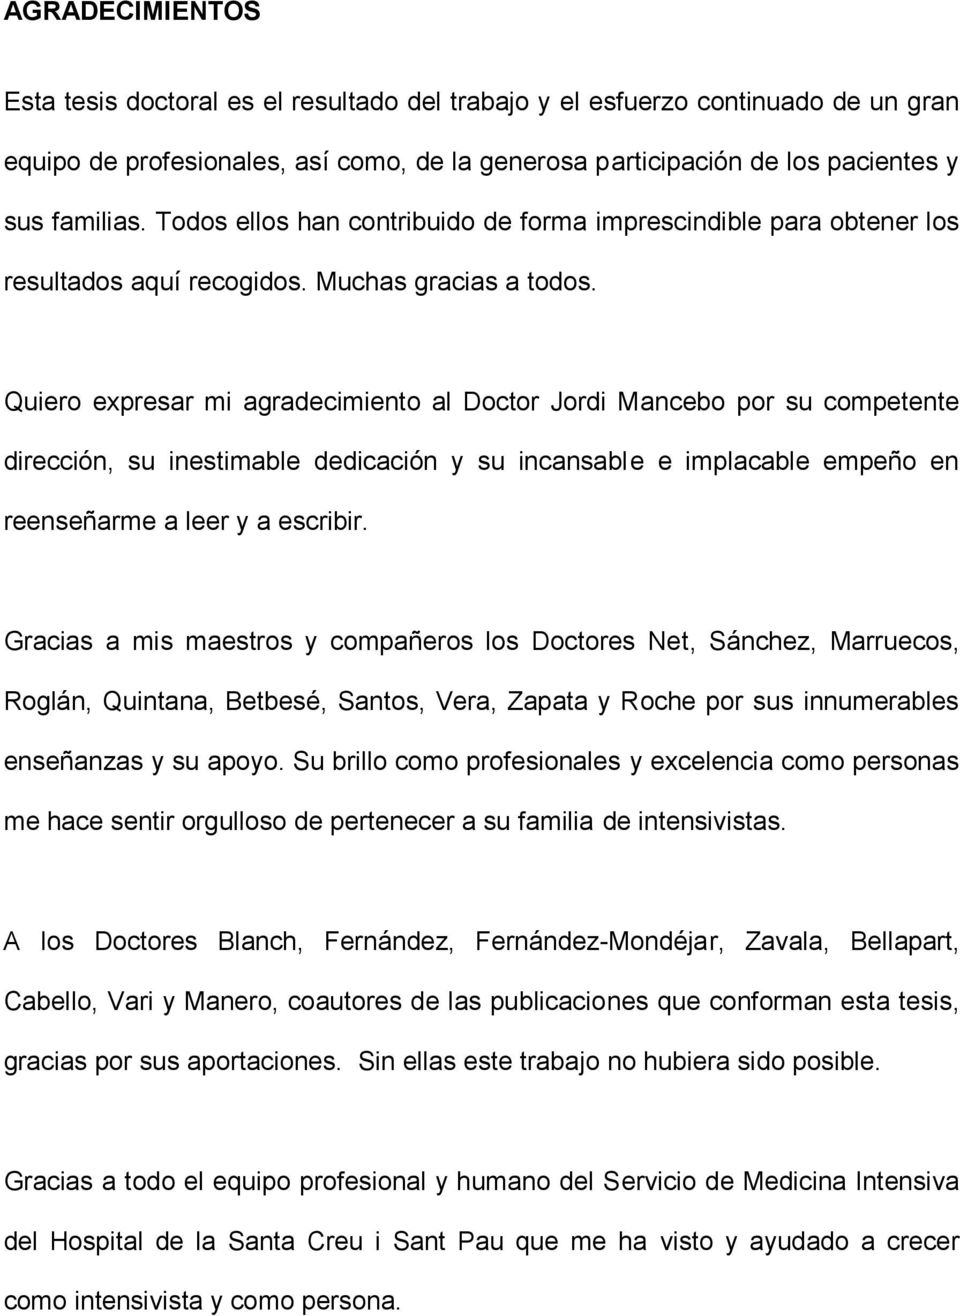 Quiero expresar mi agradecimiento al Doctor Jordi Mancebo por su competente dirección, su inestimable dedicación y su incansable e implacable empeño en reenseñarme a leer y a escribir.